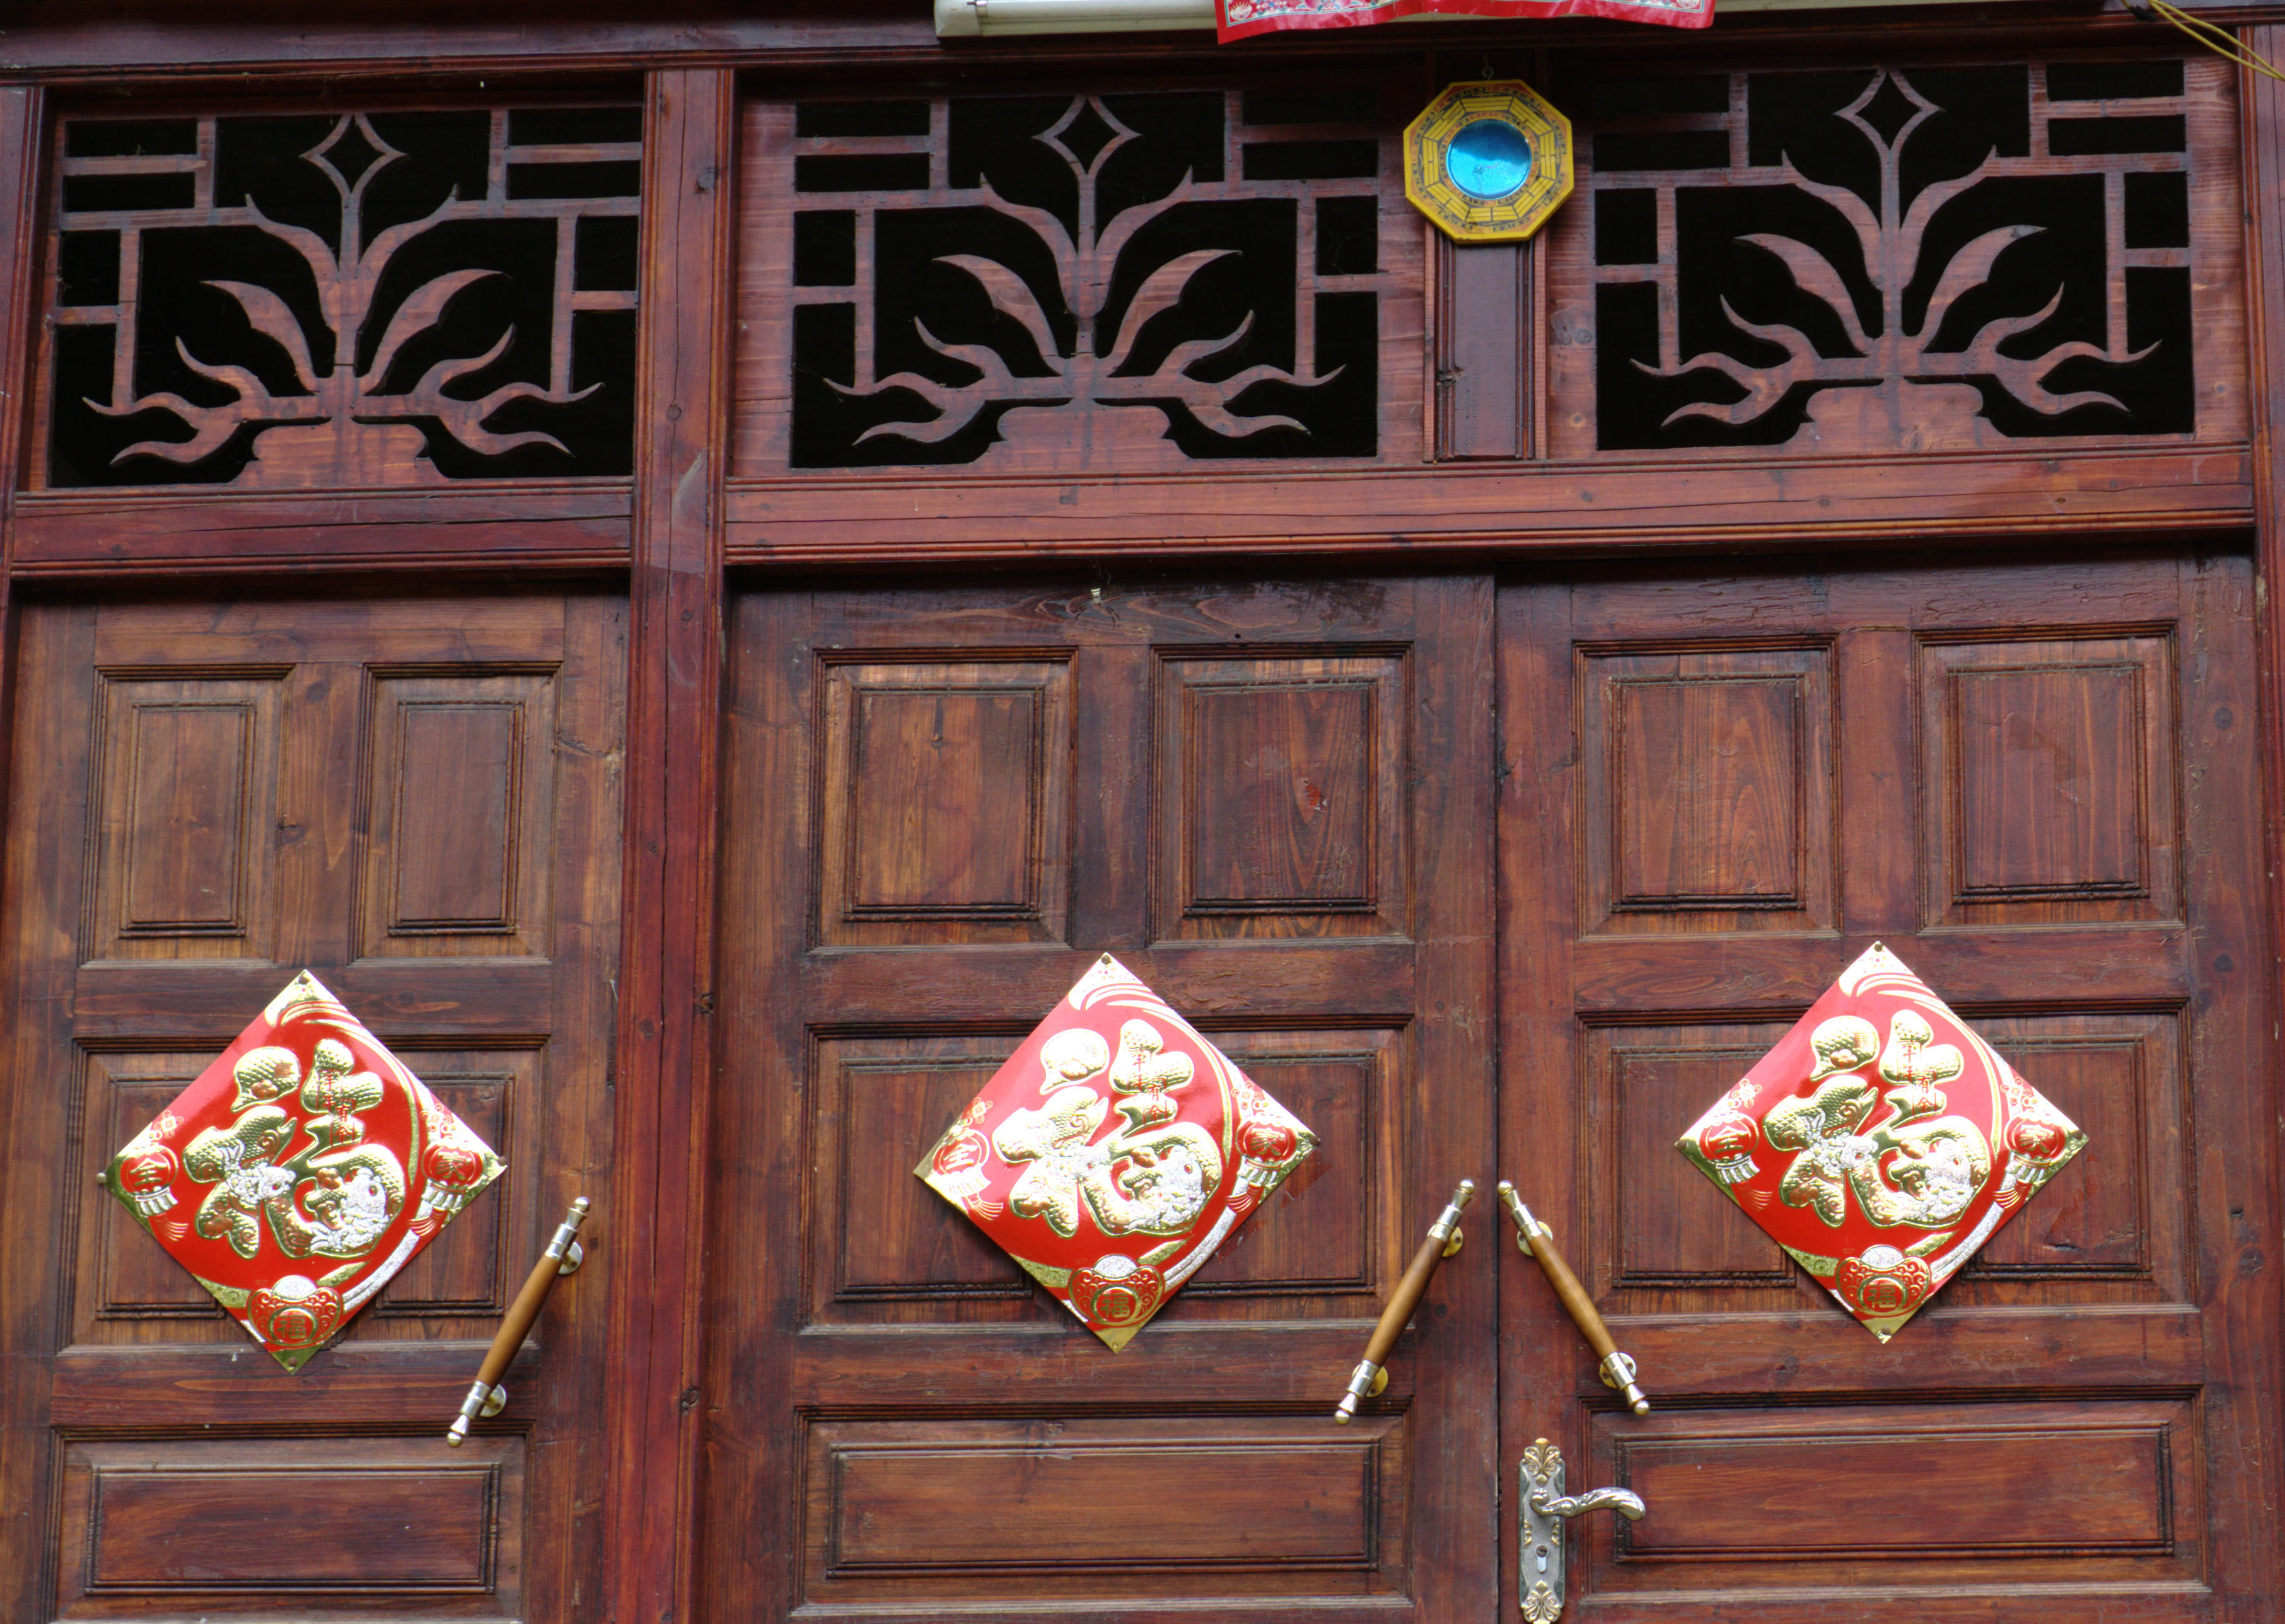 Door with good fortune inscription